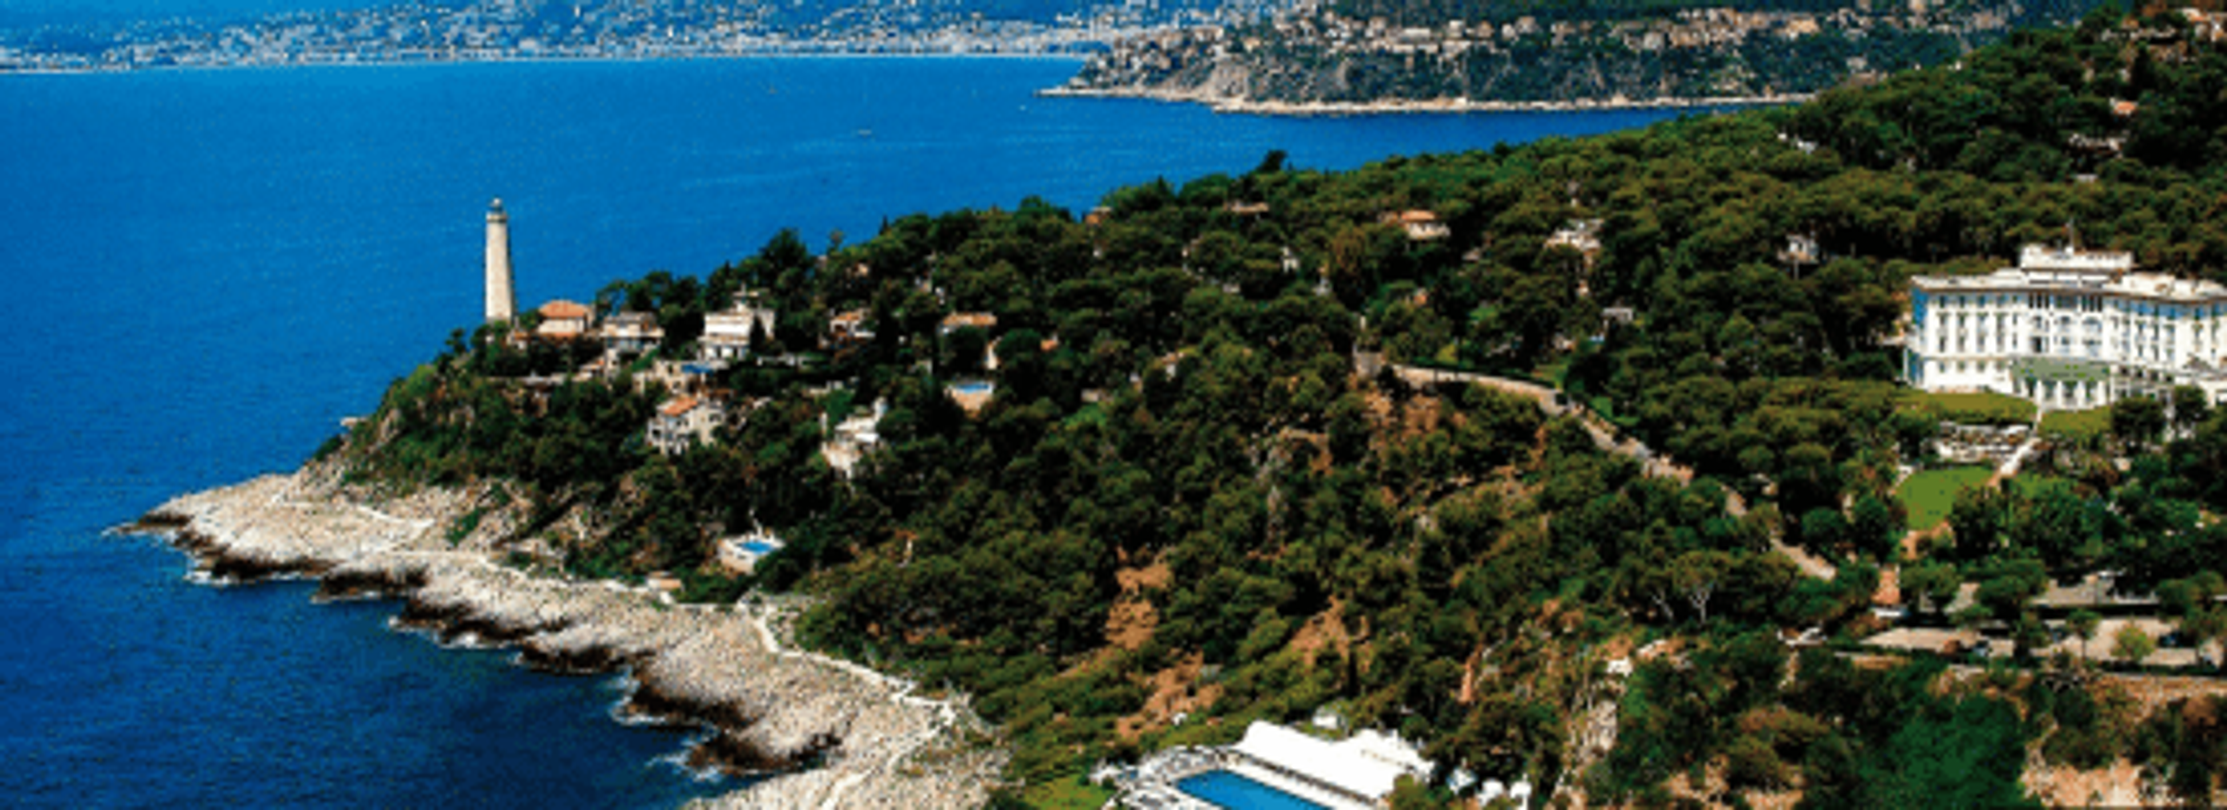 hotel luxe méditerranée